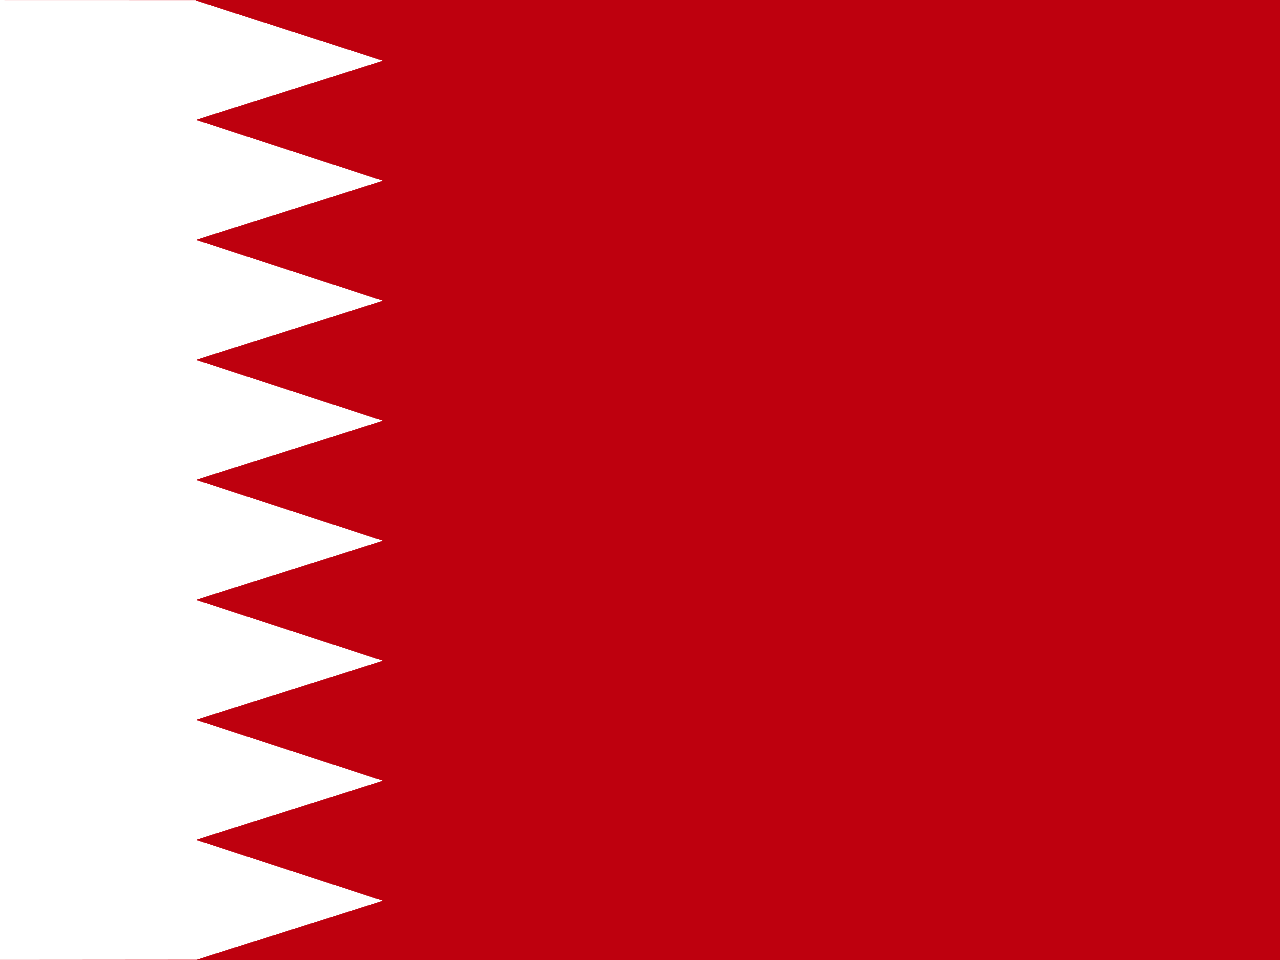 GP Bahrein 2022